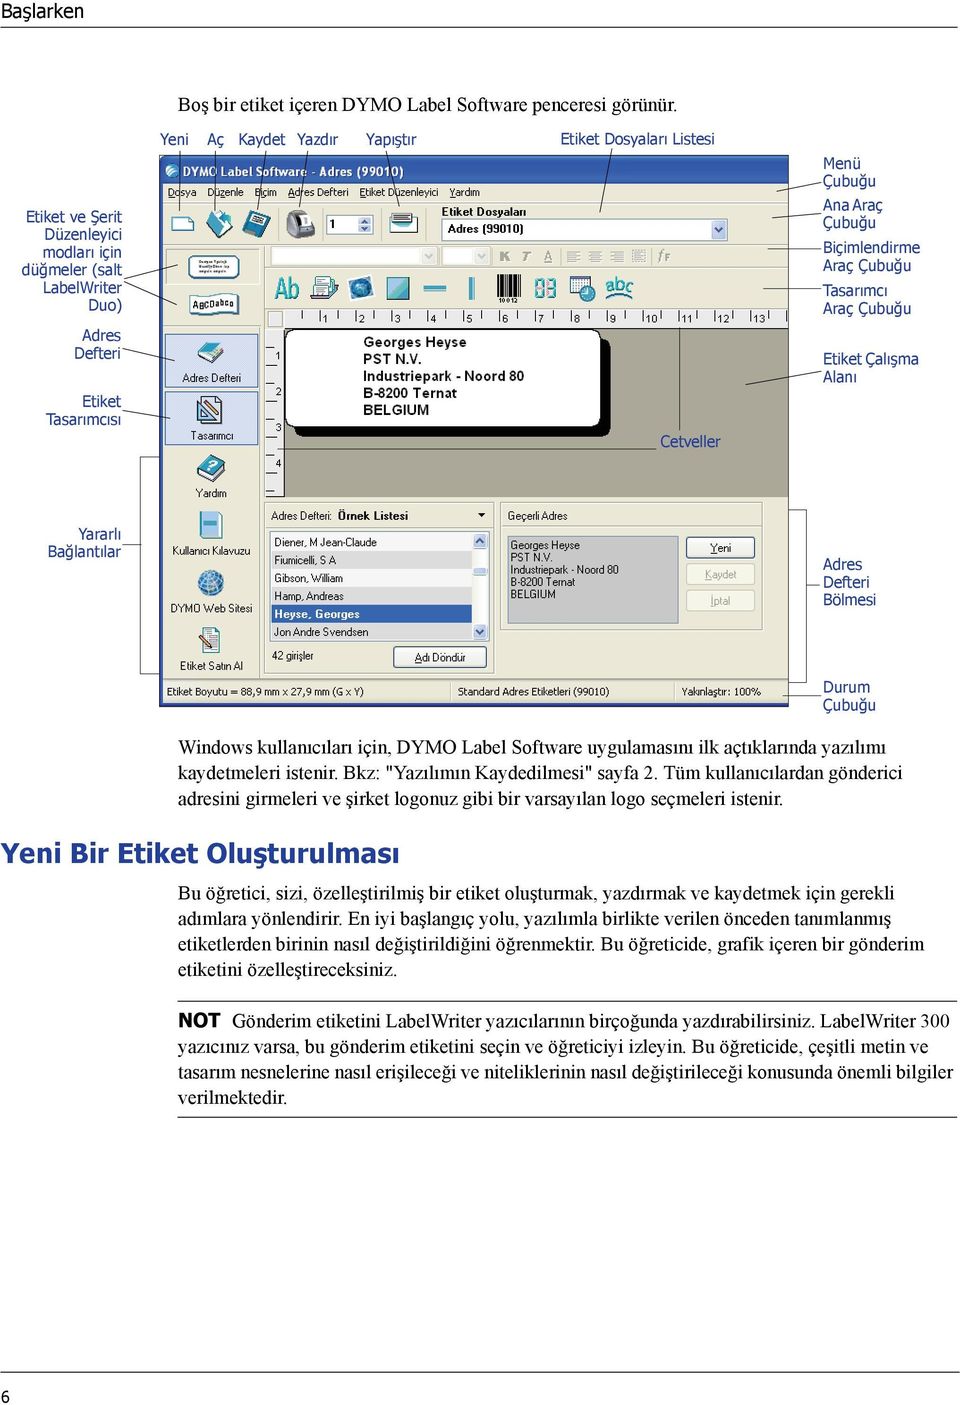 Çubuğu Adres Defteri Etiket Çalışma Alanı Etiket Tasarımcısı Cetveller Yararlı Bağlantılar Adres Defteri Bölmesi Durum Çubuğu Windows kullanıcıları için, DYMO Label Software uygulamasını ilk